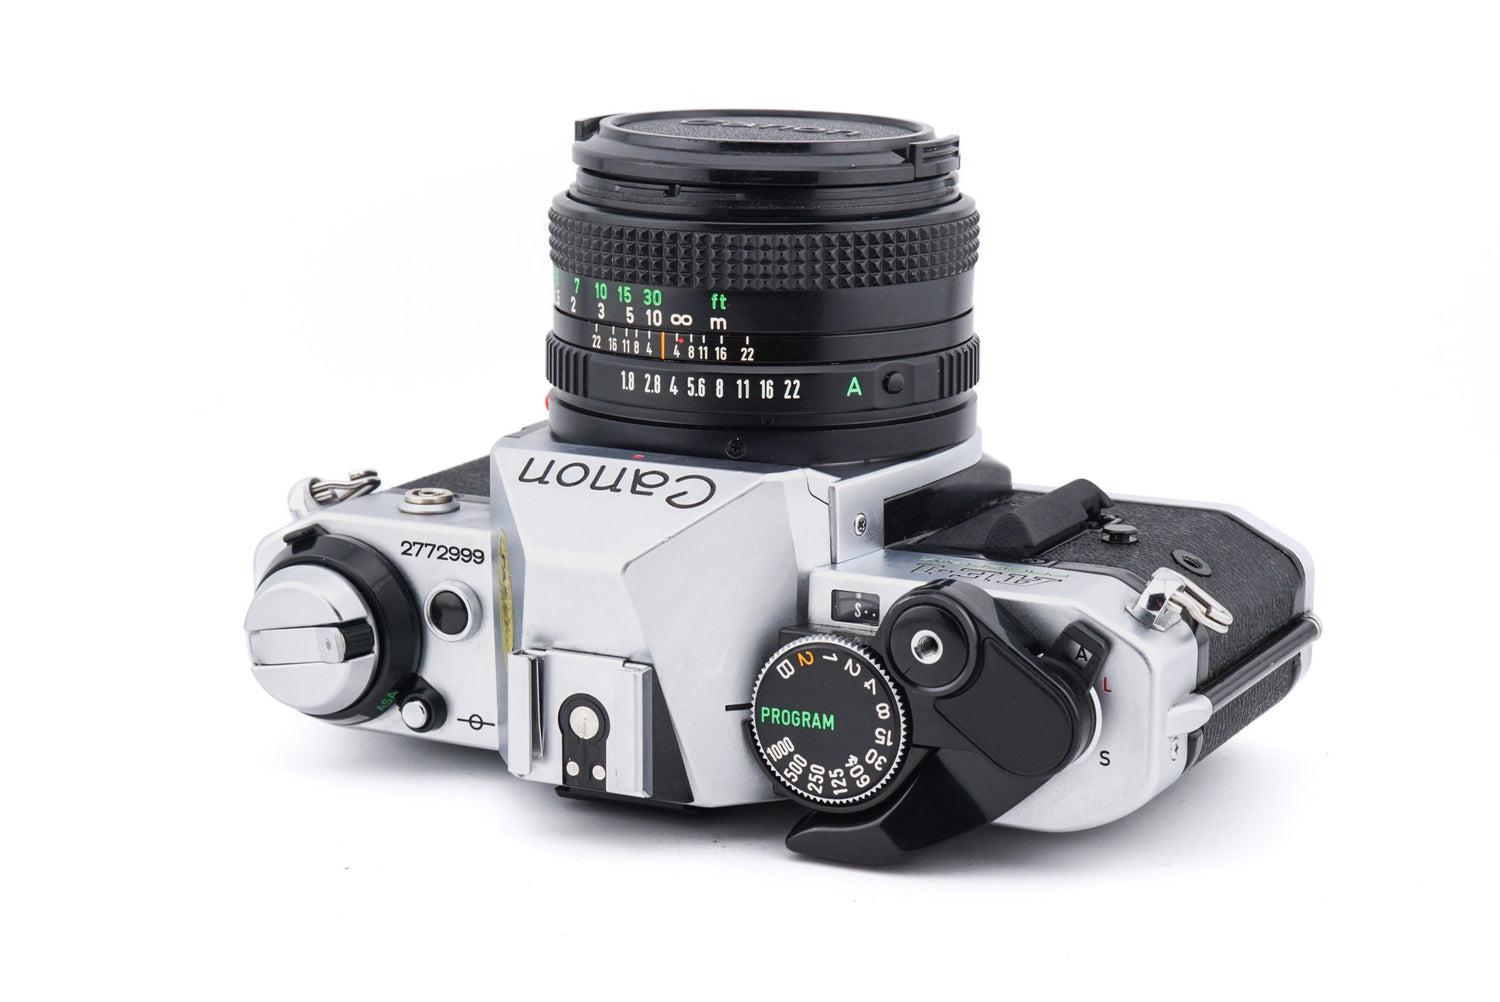 初回限定】 Canon AE-1 50mmF1.4と28mmF2.8 PROGRAM+FD フィルムカメラ